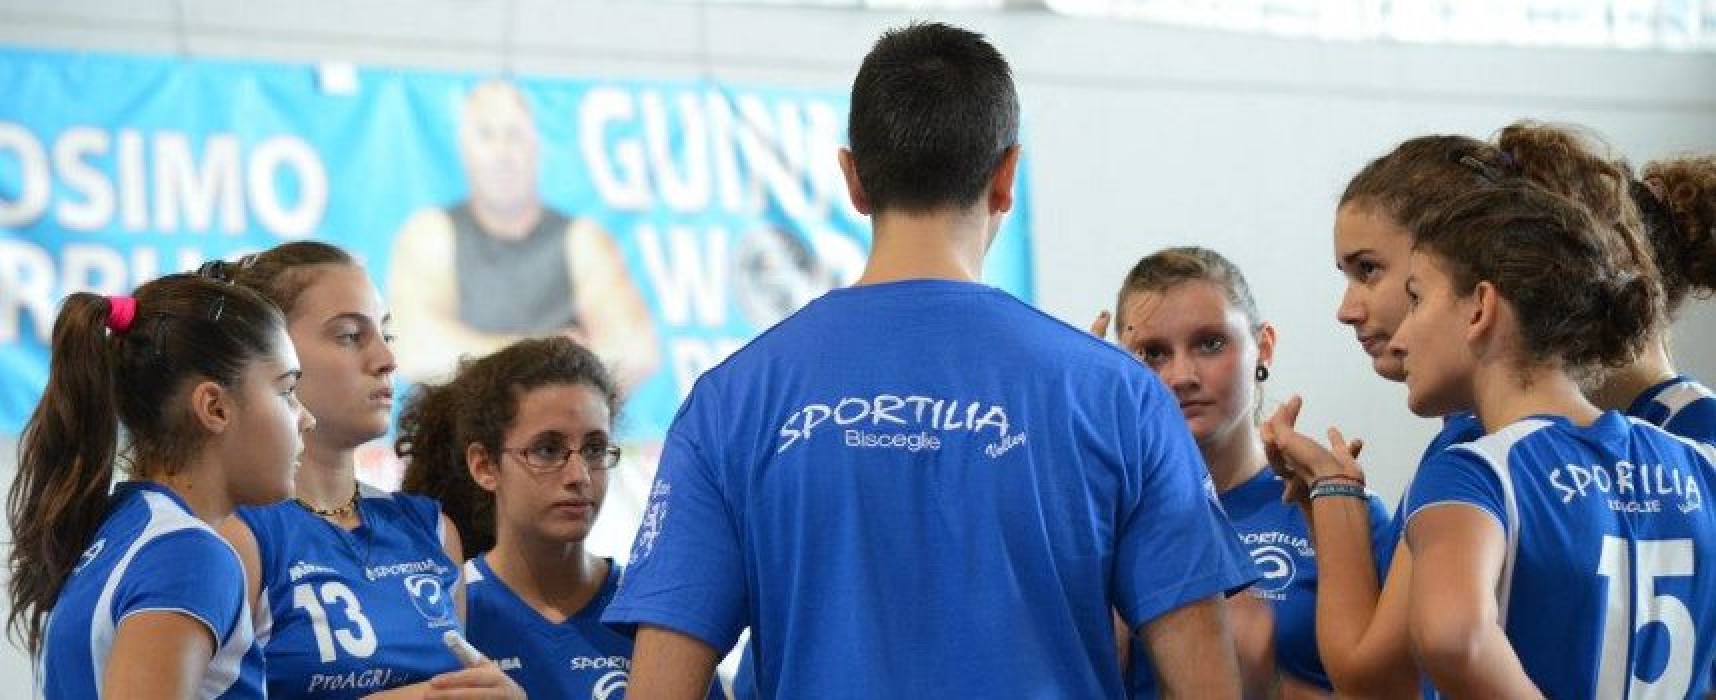 Sportilia Volley: Prima Divisione Giovani promossa in serie D!